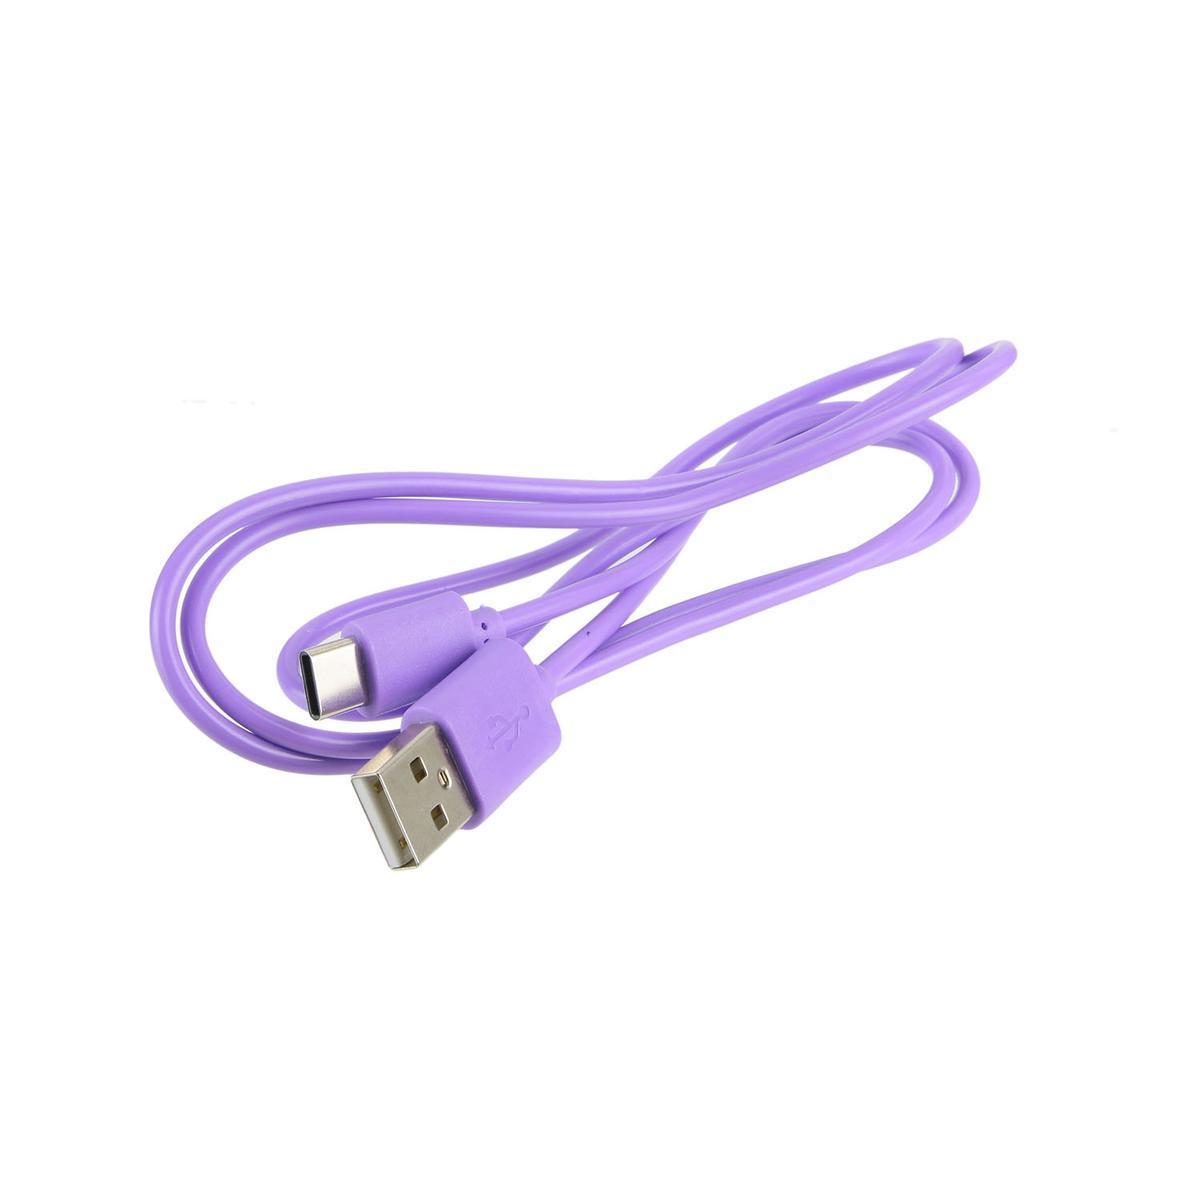 Câble USB type C - L 100 x H 0.7 x l 1.5 cm - Différents coloris - Noir, rose, bleu, violet - BE MIX